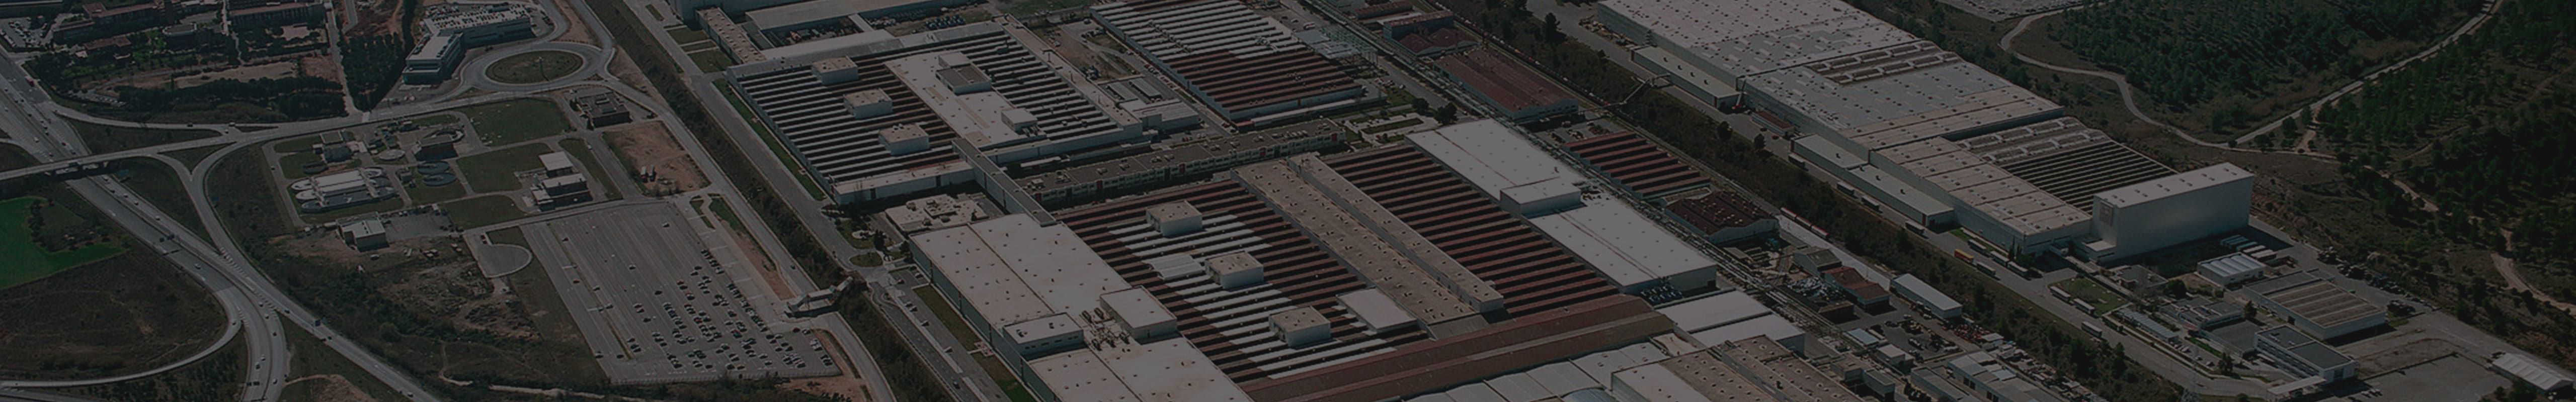 SEATs bilfabrik i Martorell utanför Barcelona, sedd ur drönarvy